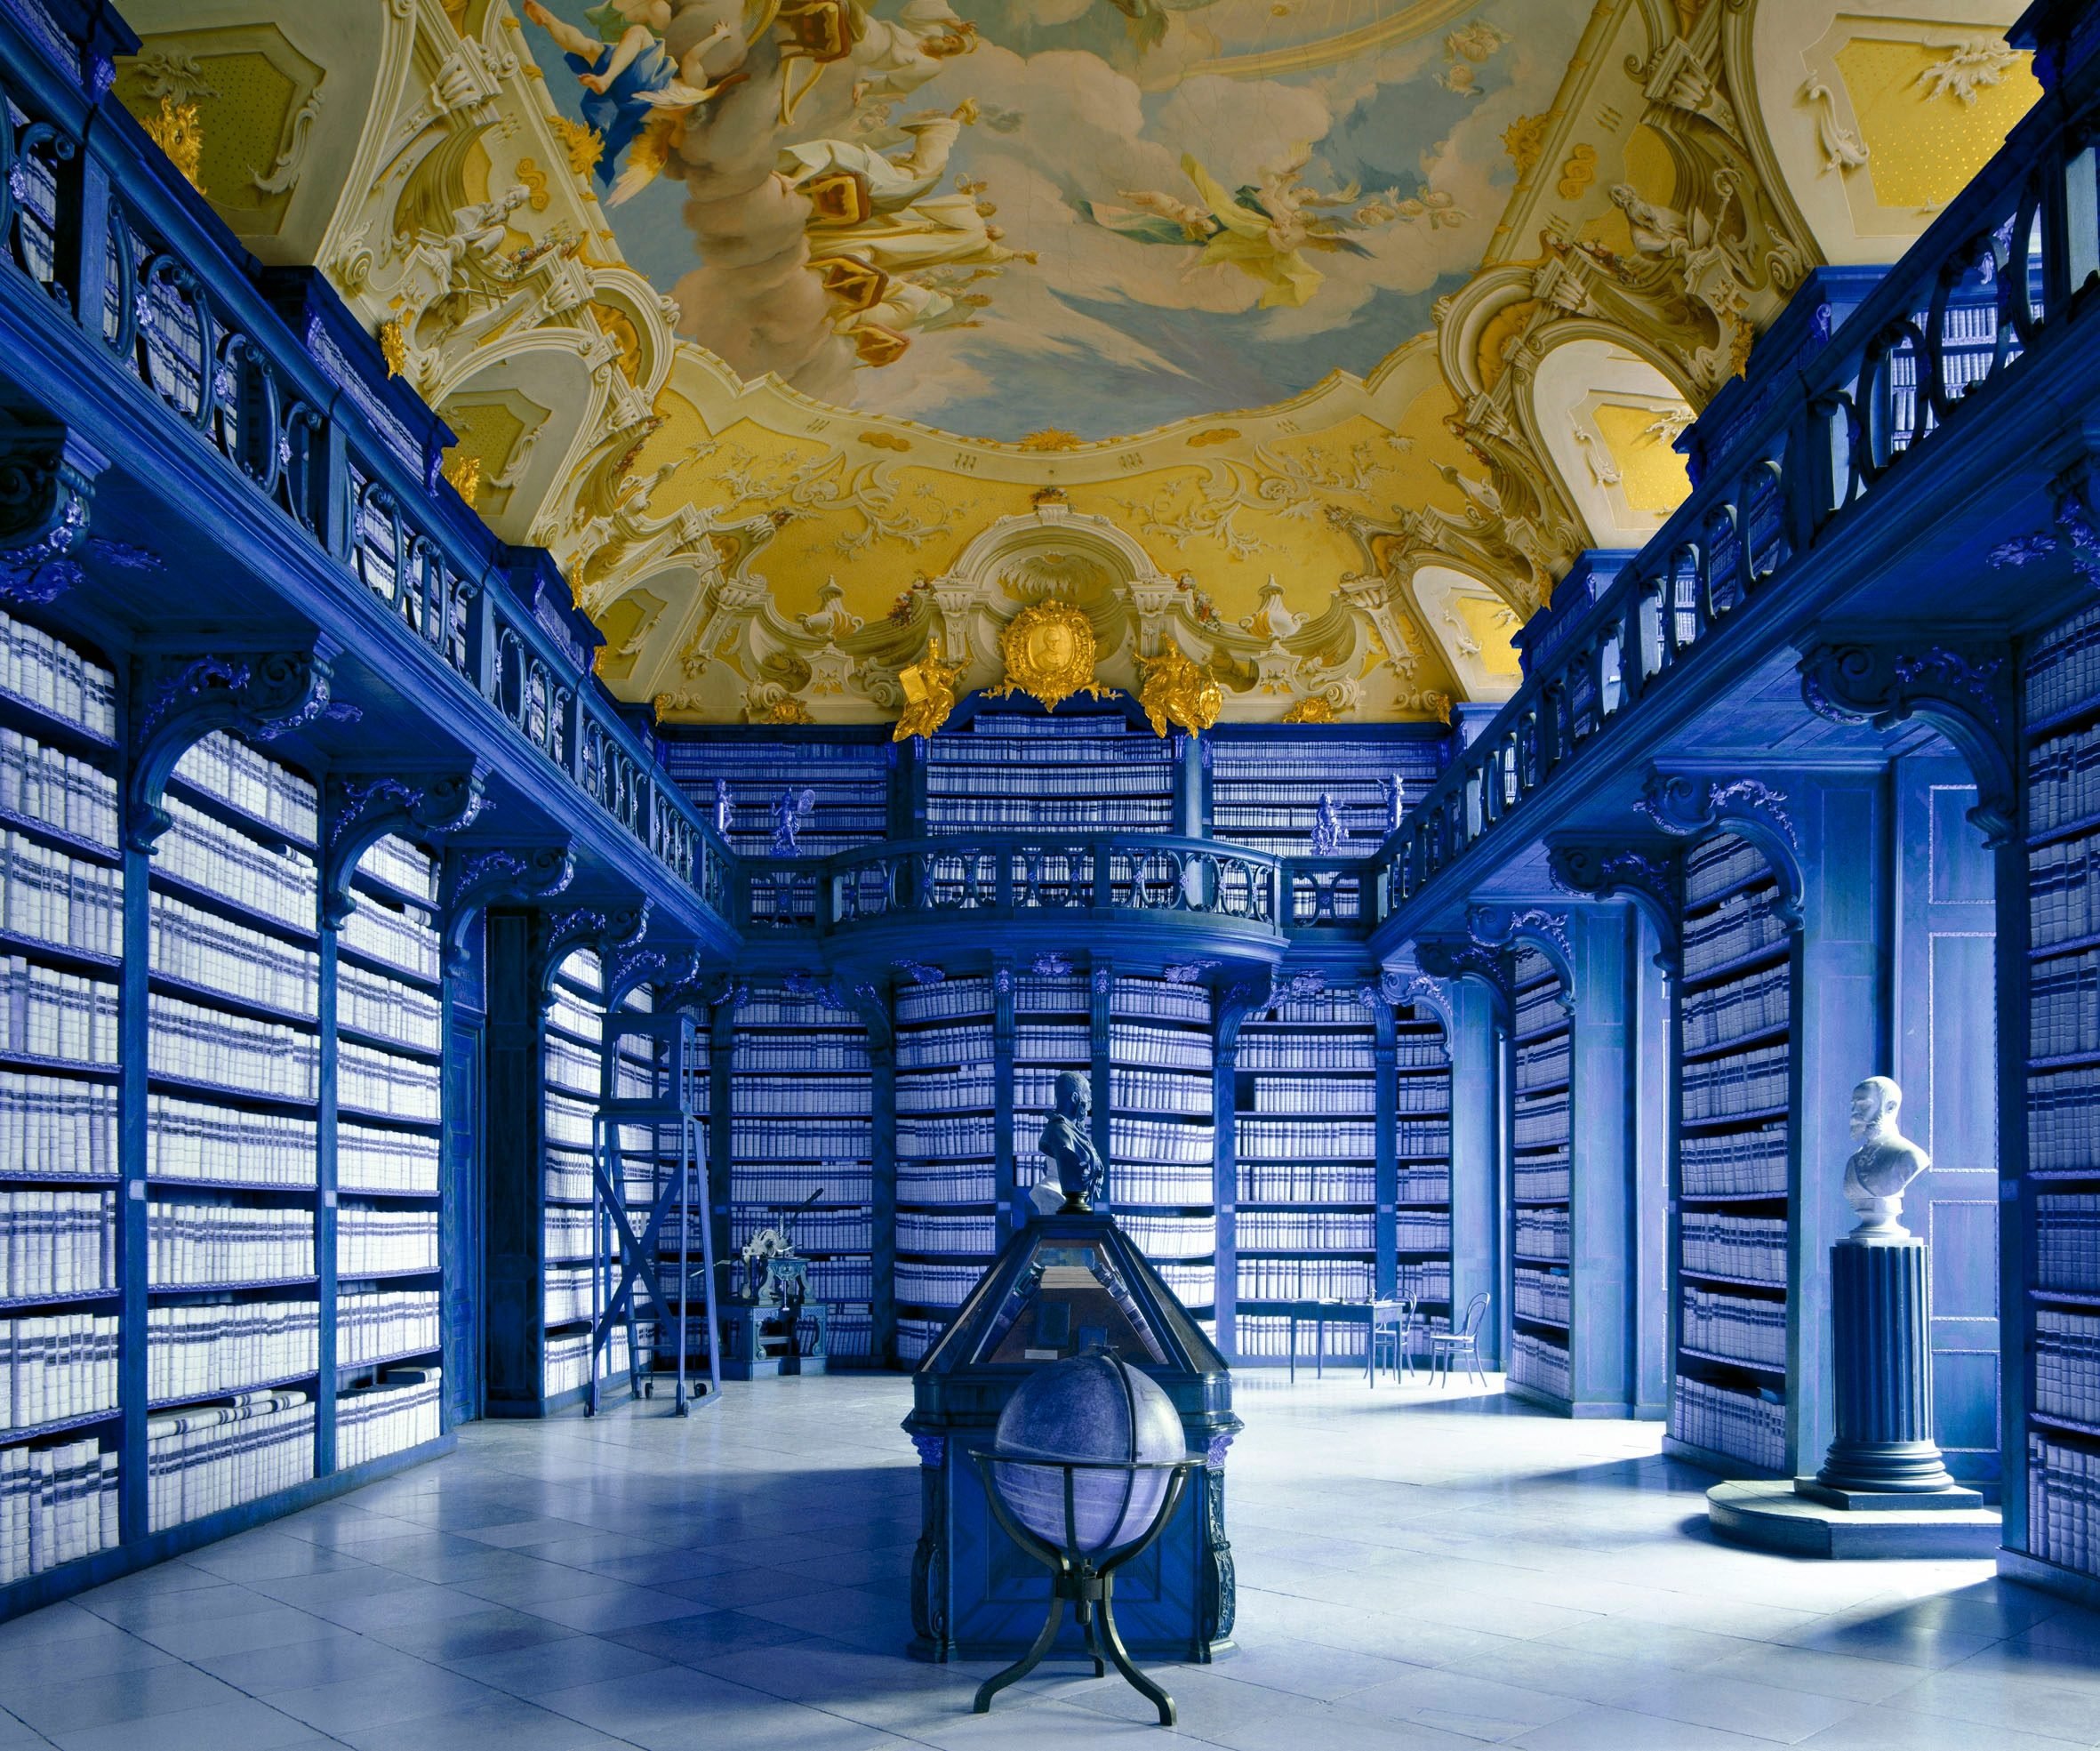 Самая лучшая библиотека. Библиотека Кремсмюнстерского аббатства, Австрия. Библиотека аббатства Зайтенштеттен, Зайтенштеттен, Австрия. Библиотека аббатства Адмонт, Австрия фасад.